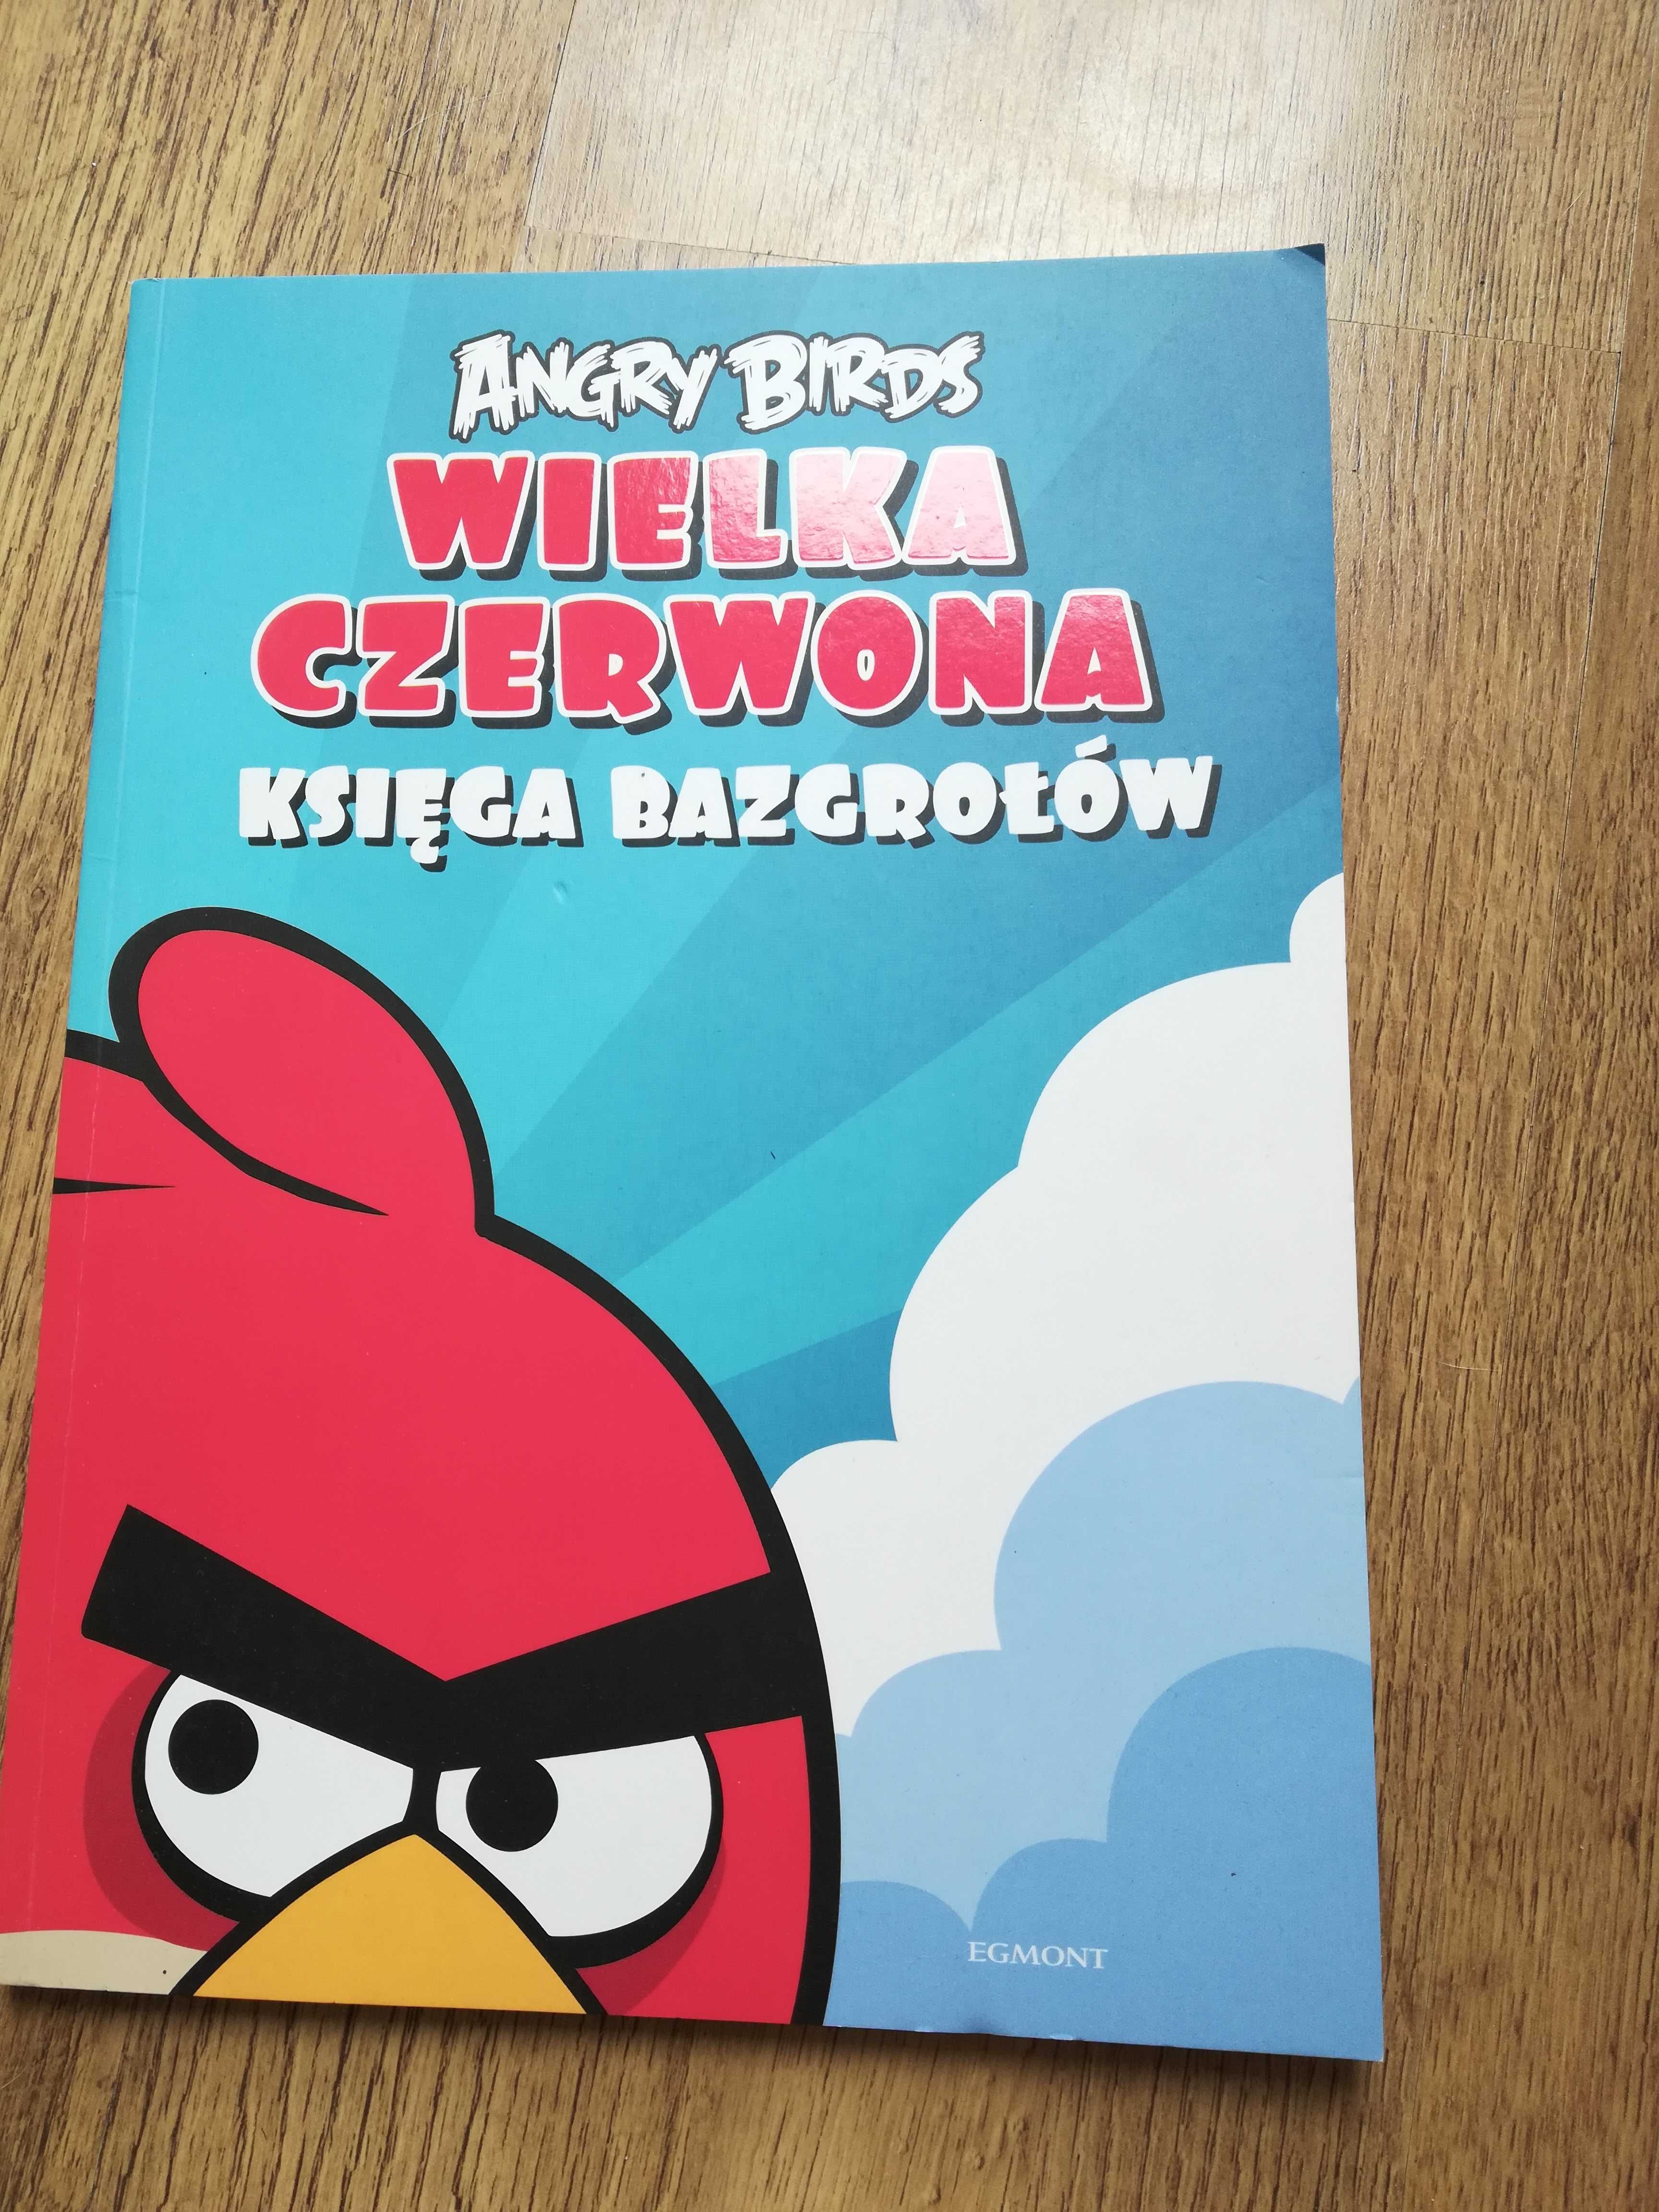 "Wielka czerwona księga bazgrołów Angry Birds"